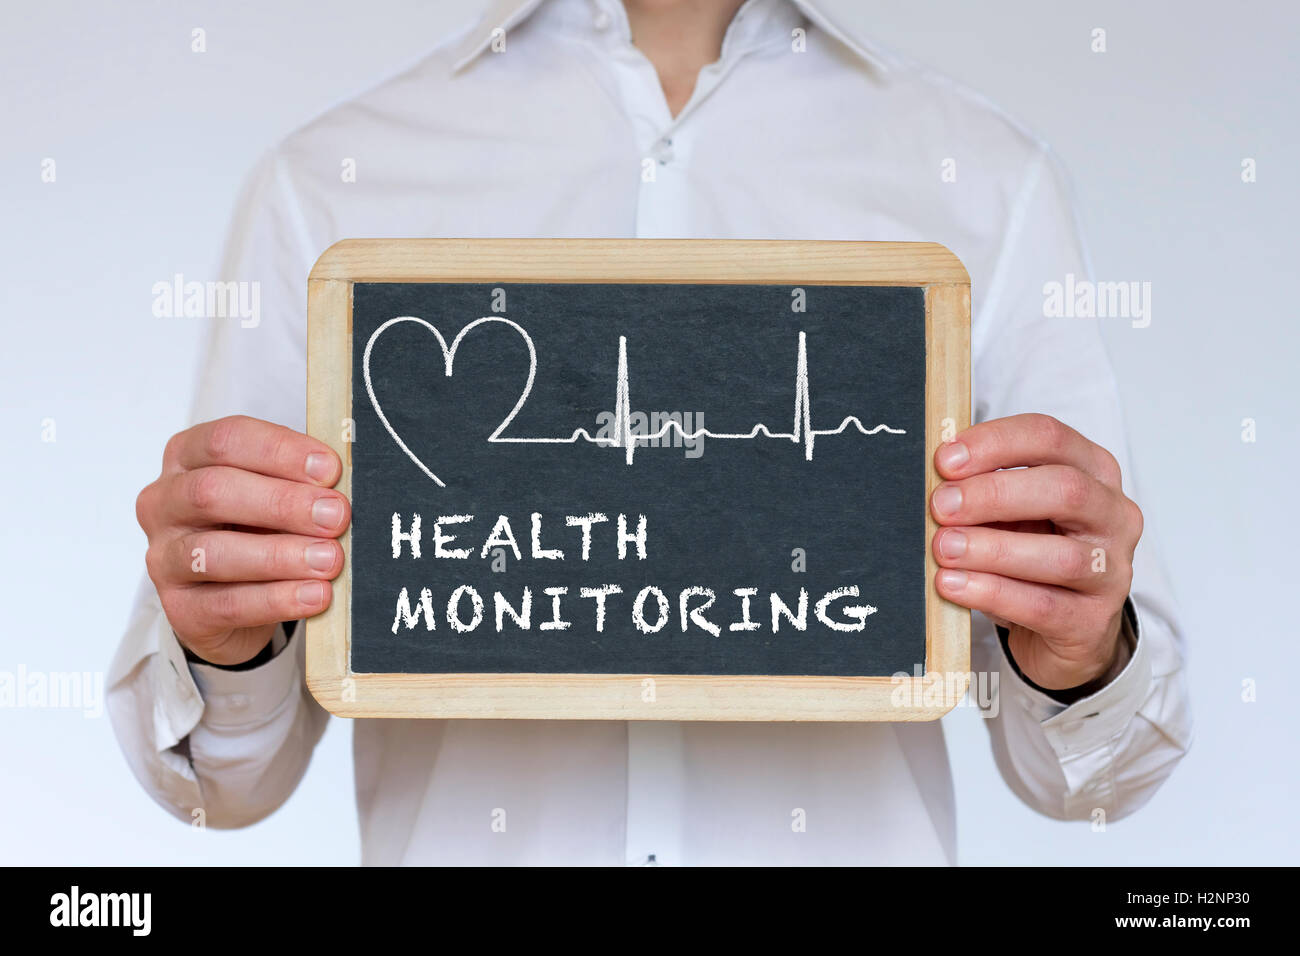 Ilustración de vigilancia de la salud escrito en la pizarra Foto de stock